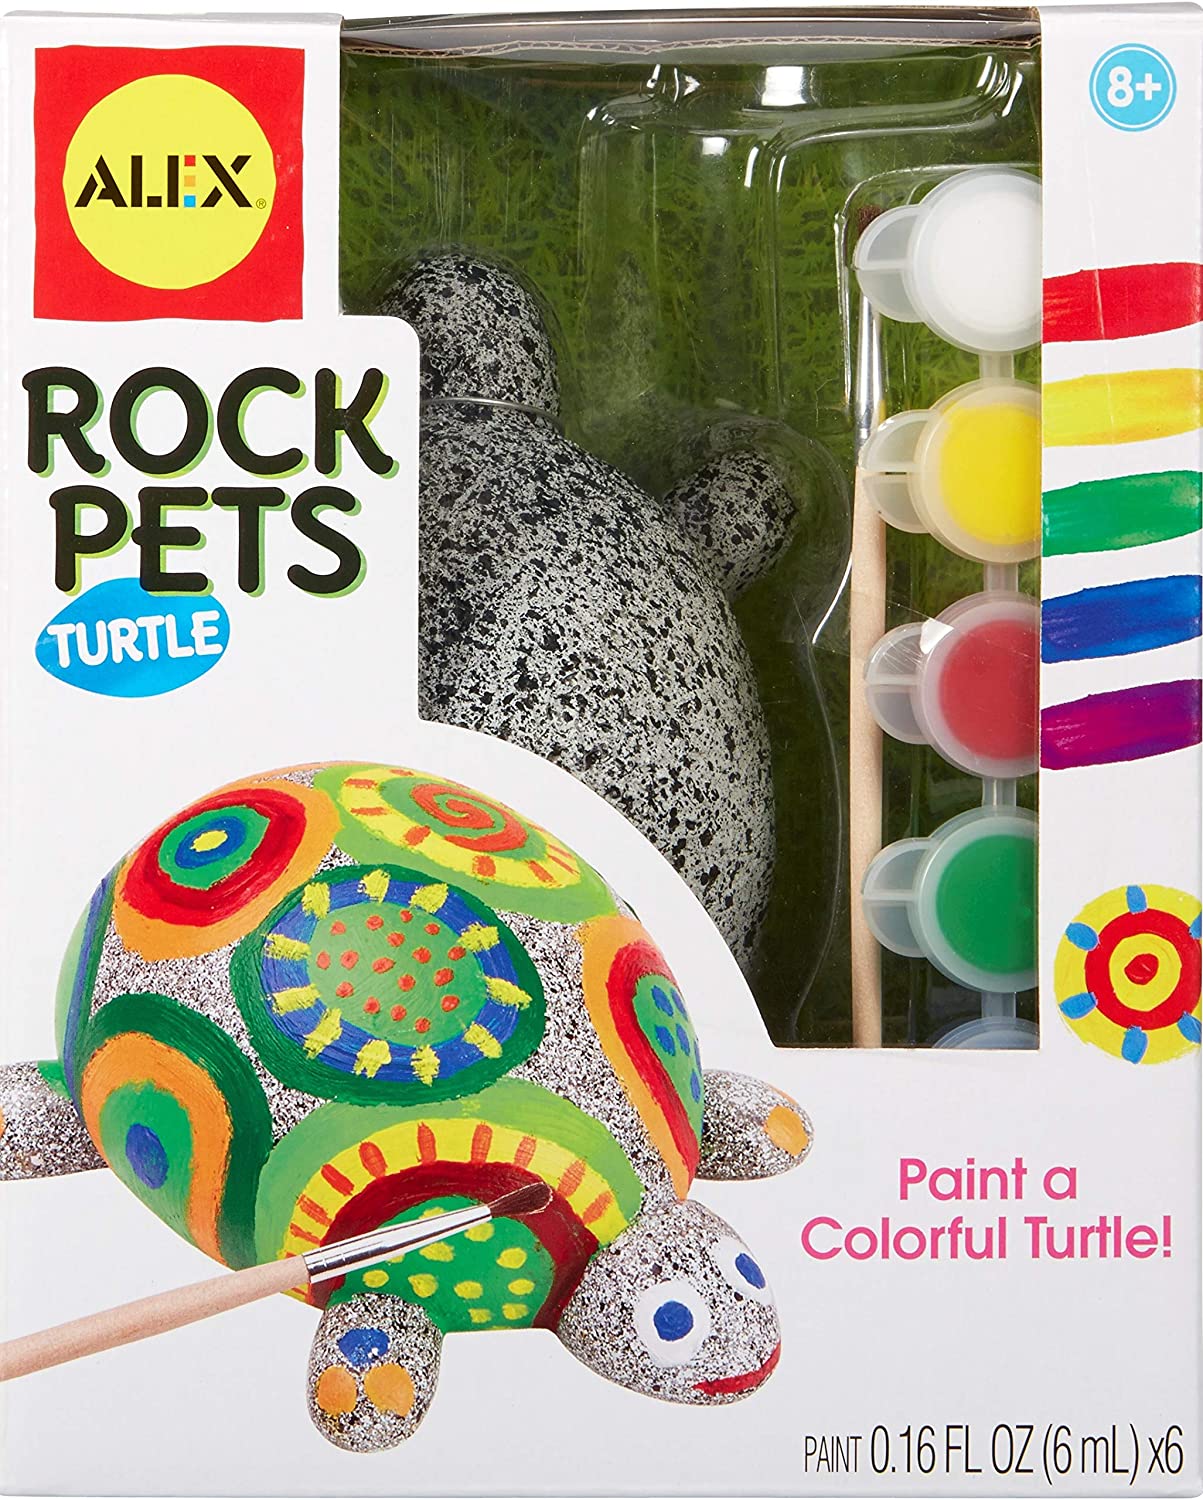 Alex Rock Pets Turtle 